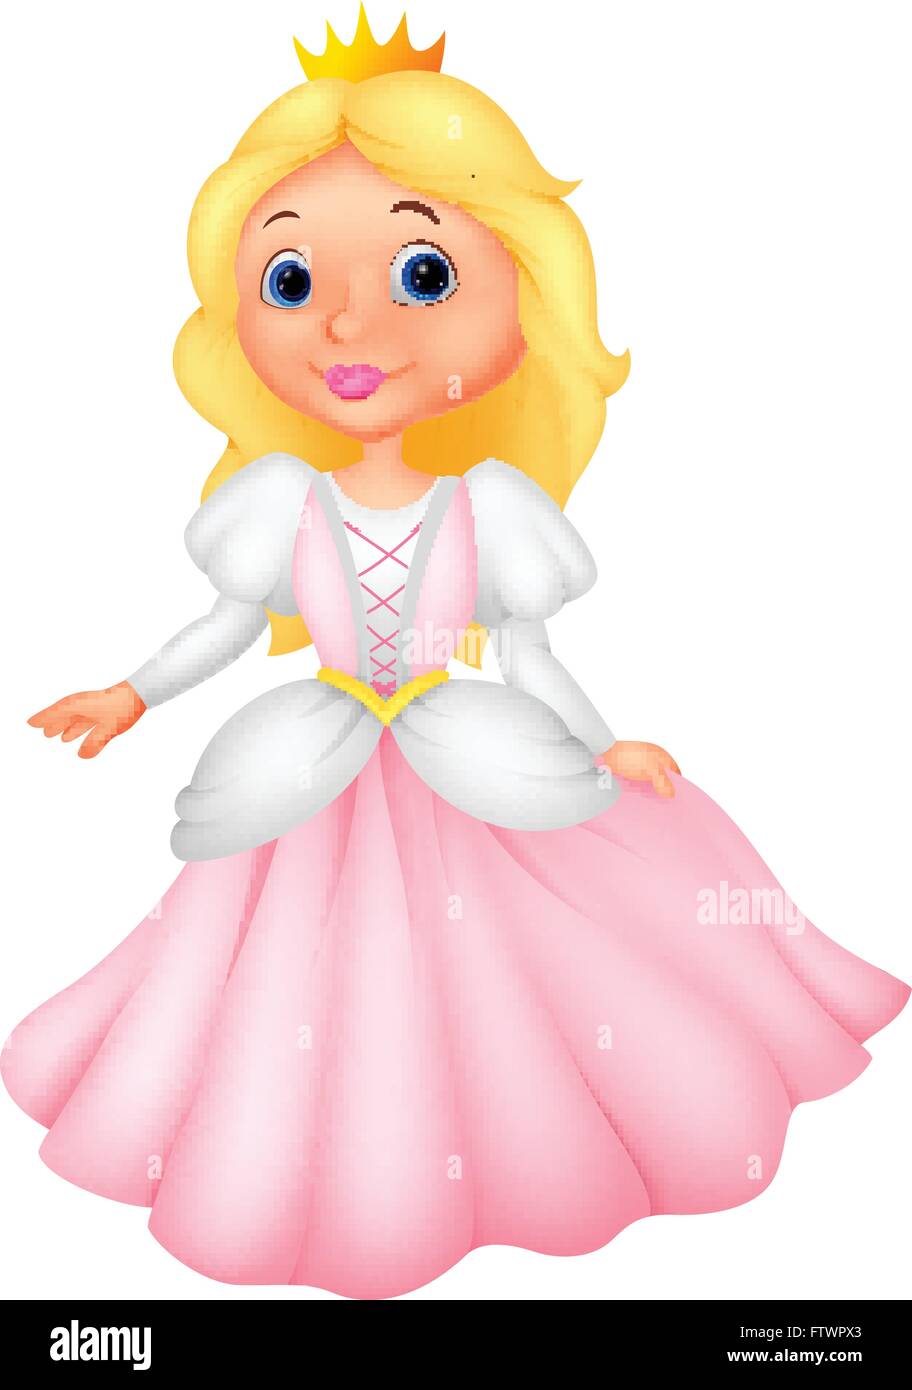 Princess cartoon cinderella hi-res stock photography and images - Alamy